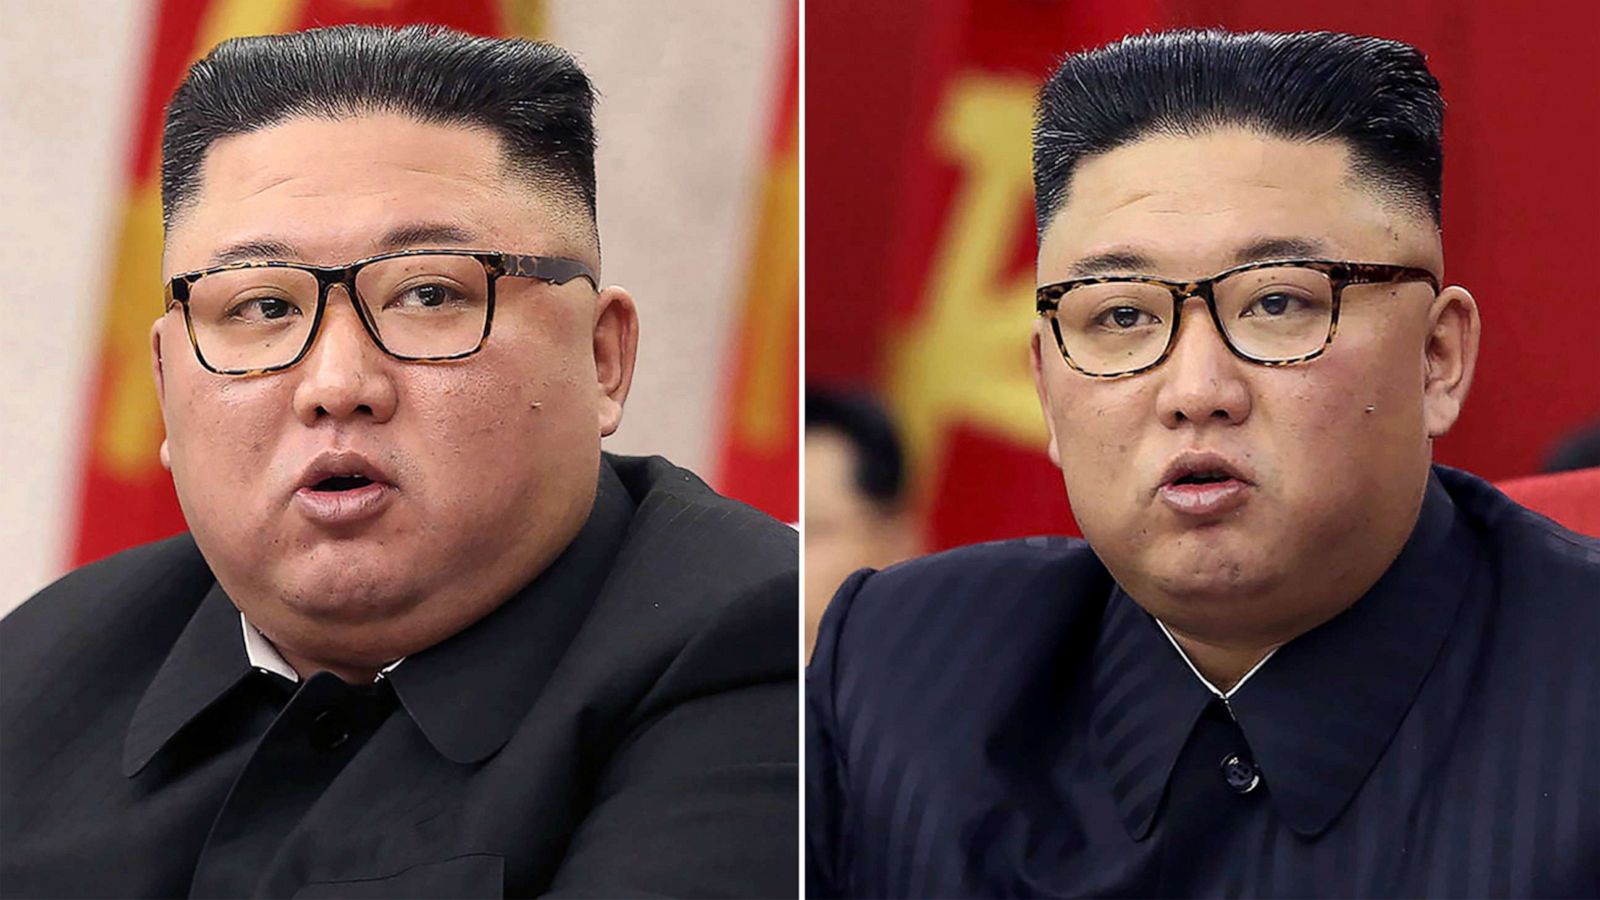 زعيم كوريا الشمالية كيم جونغ أون يتمتع بصحة جيدة على الرغم من خسارته 20 كيلوغرامًا watanserb.com